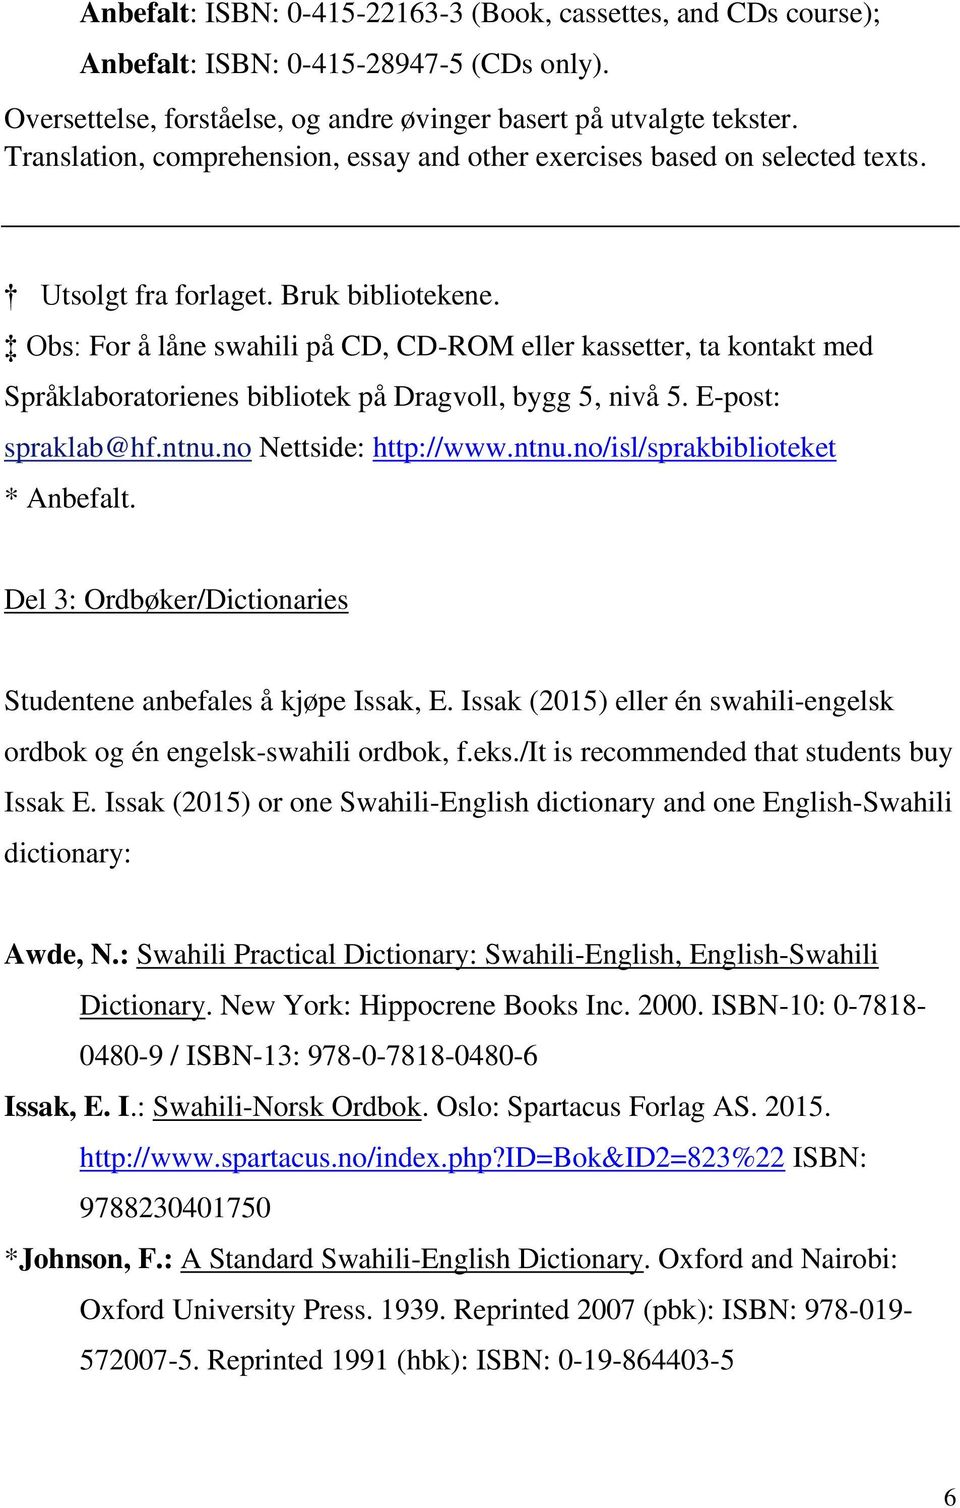 Obs: For å låne swahili på CD, CD-ROM eller kassetter, ta kontakt med Språklaboratorienes bibliotek på Dragvoll, bygg 5, nivå 5. E-post: spraklab@hf.ntnu.no Nettside: http://www.ntnu.no/isl/sprakbiblioteket * Anbefalt.